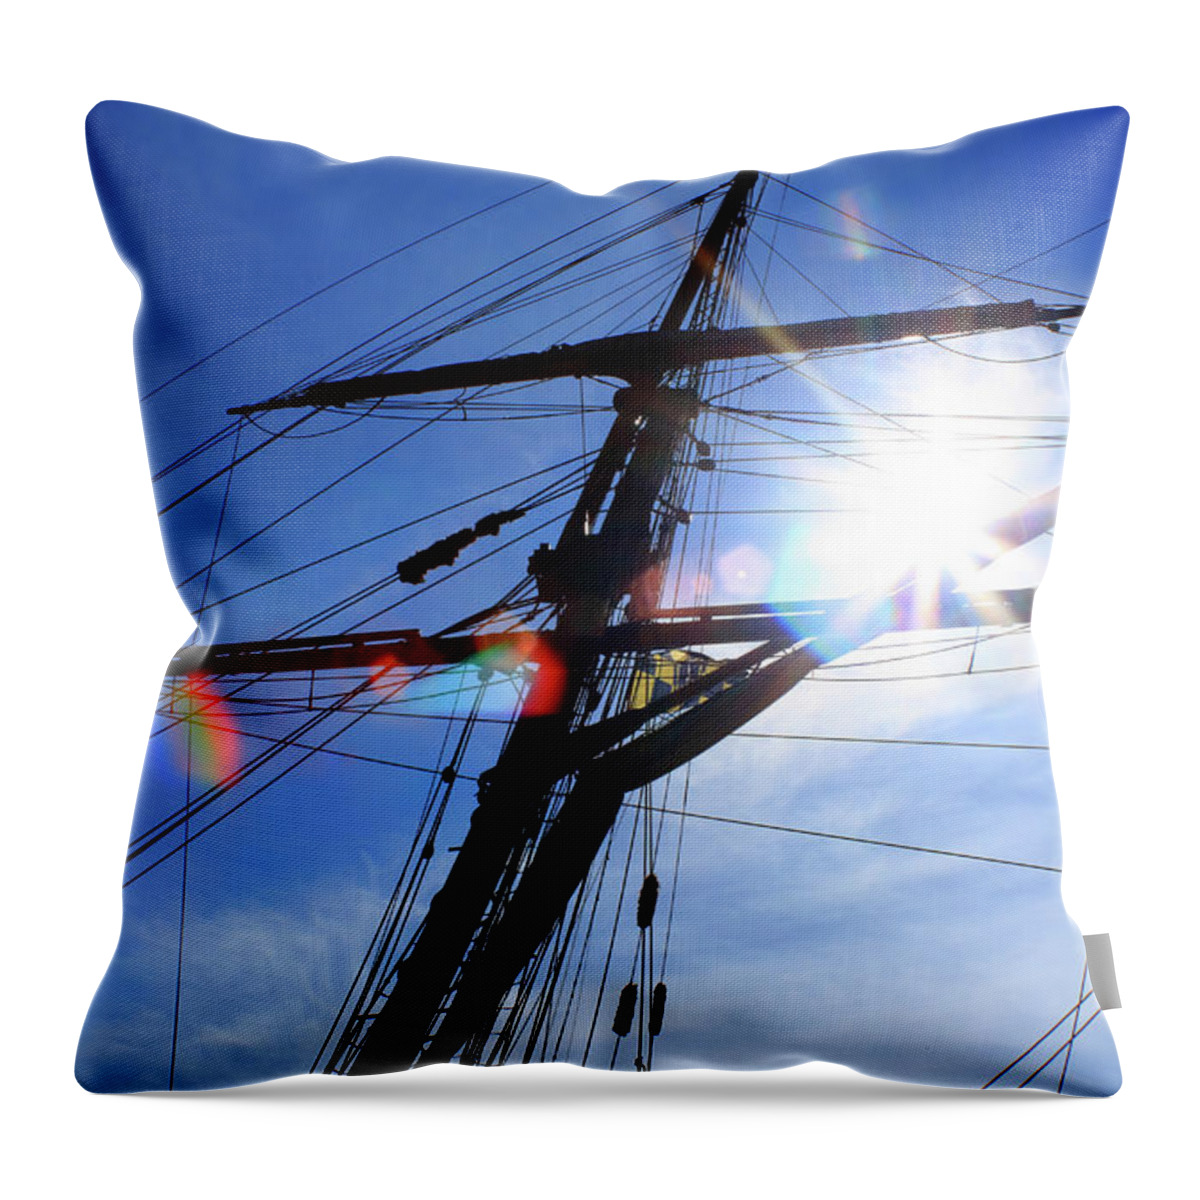 Rhode Island Throw Pillow featuring the photograph Sunlight by Jim Feldman